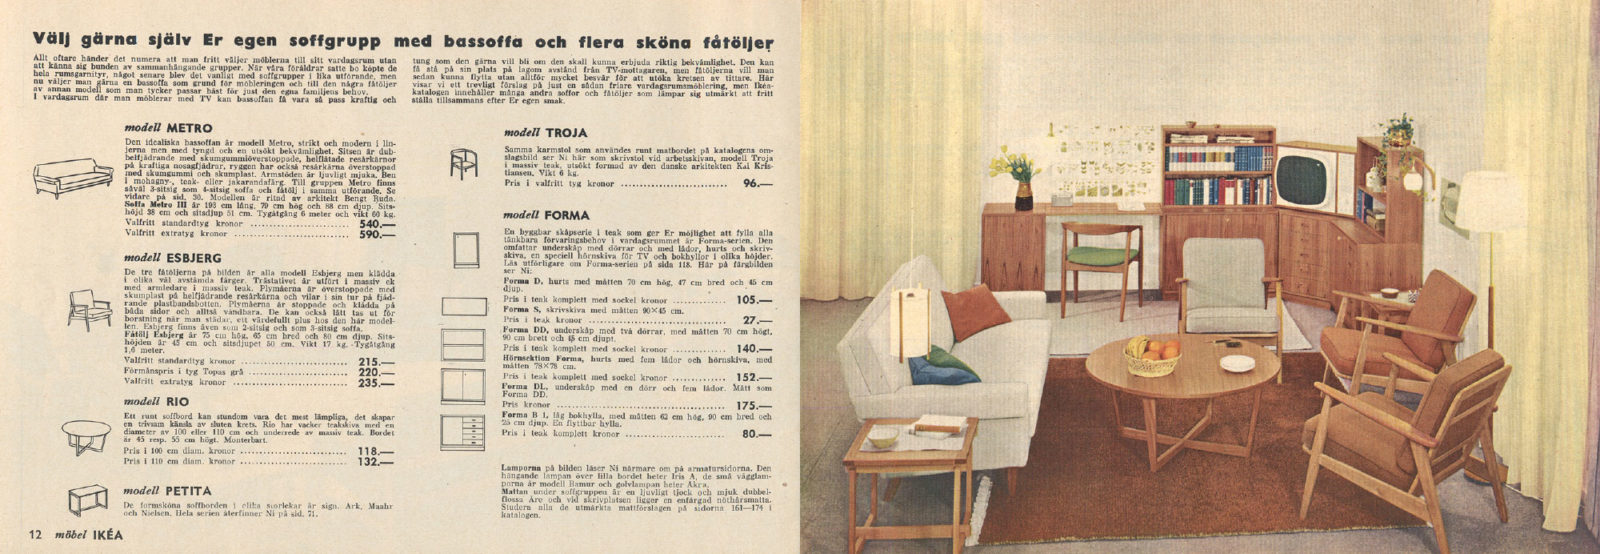 Uppslag i IKEA katalogen 1961 med möbelbeskrivningar och en helsidesbild av ett ljust vardagsrum med blommor i vas och en tv.